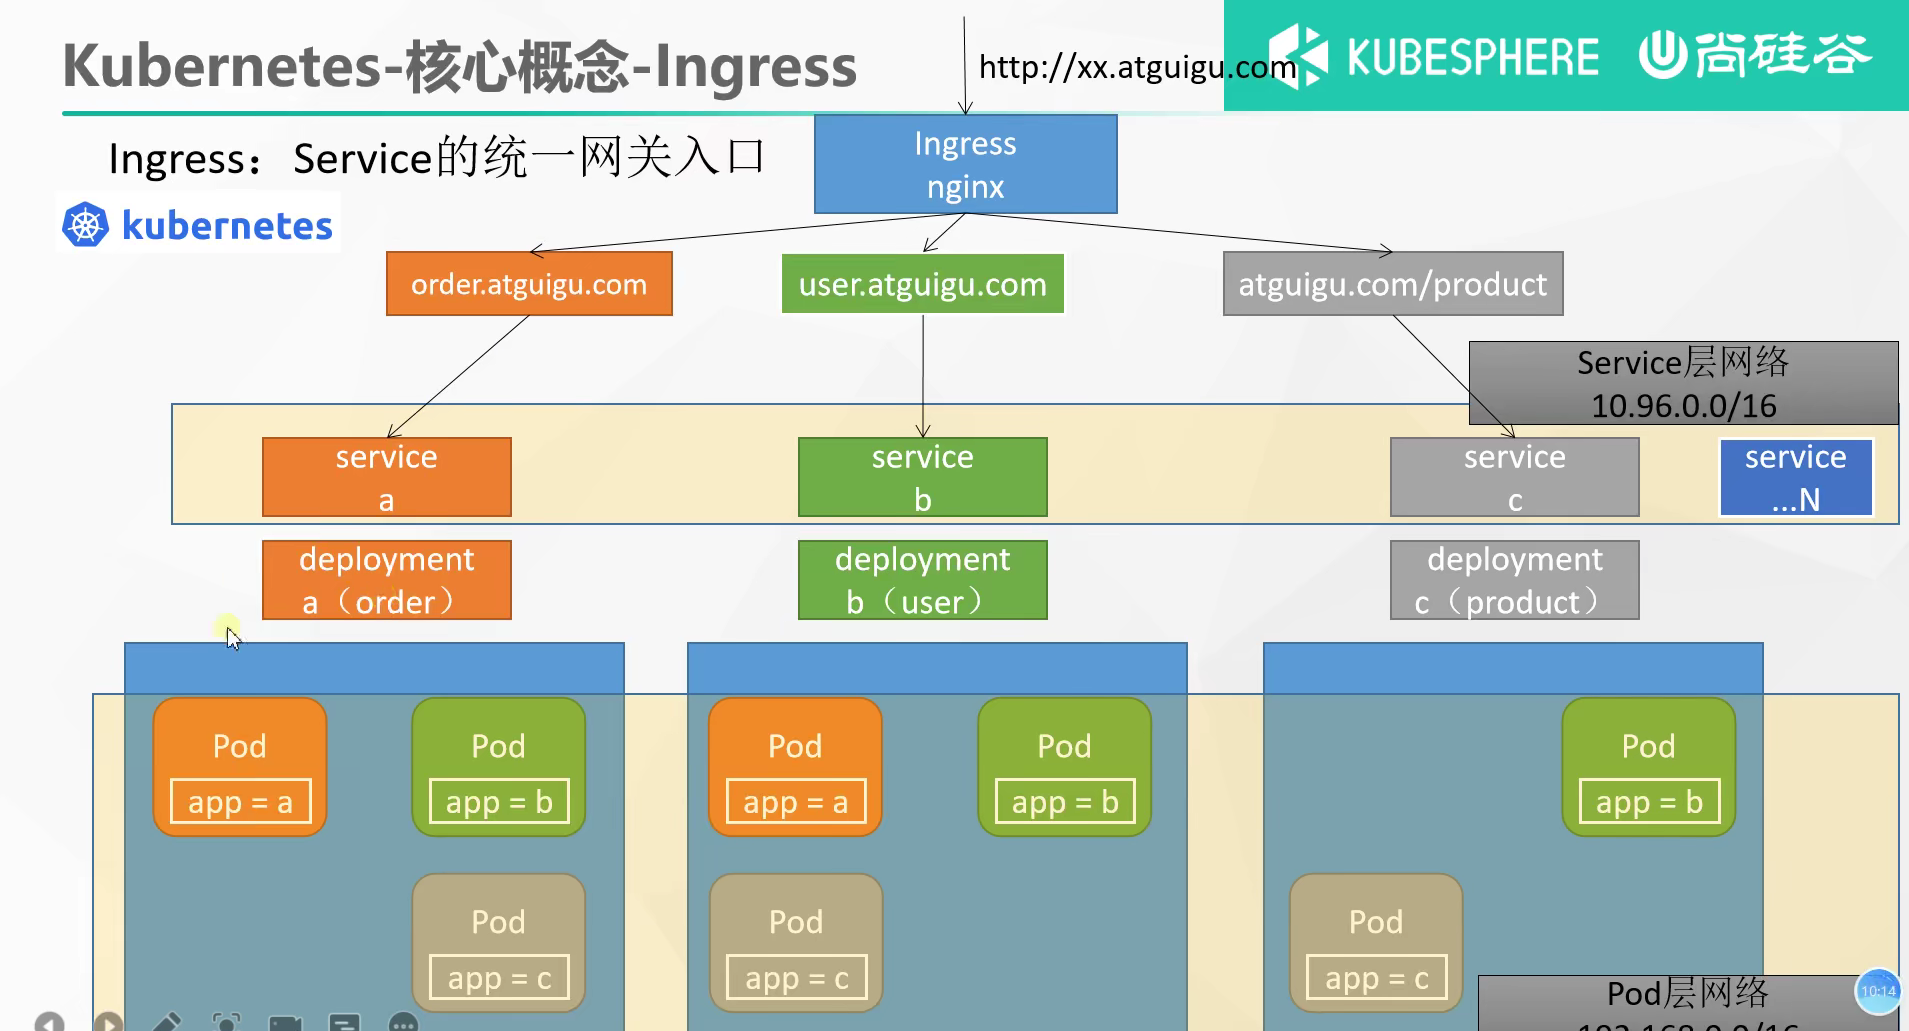 K8s-Ingress - 图1